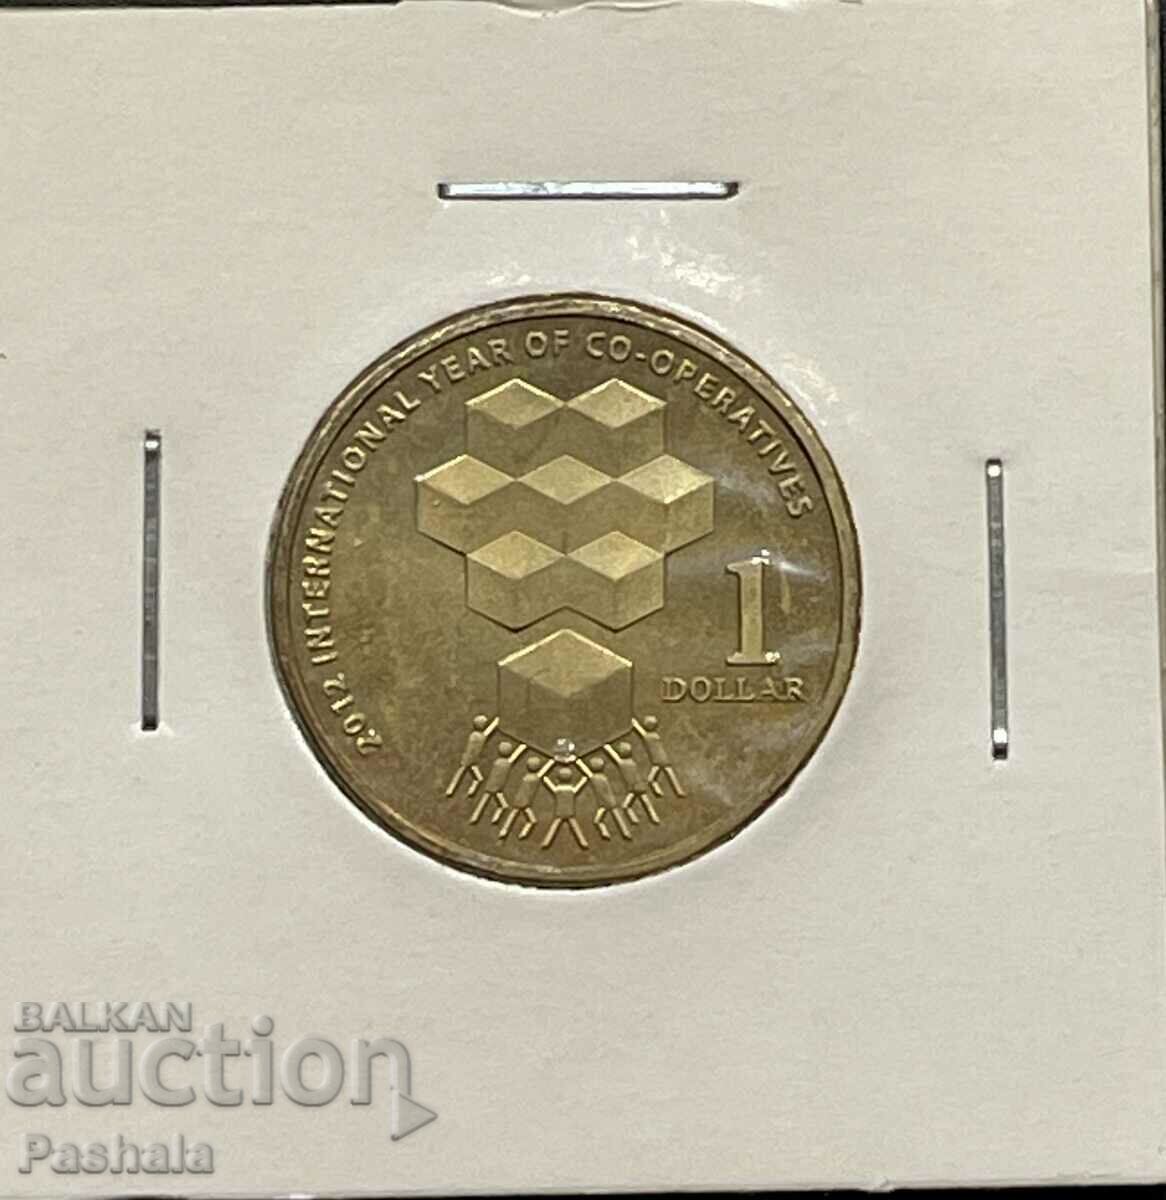 Australia $1 2012